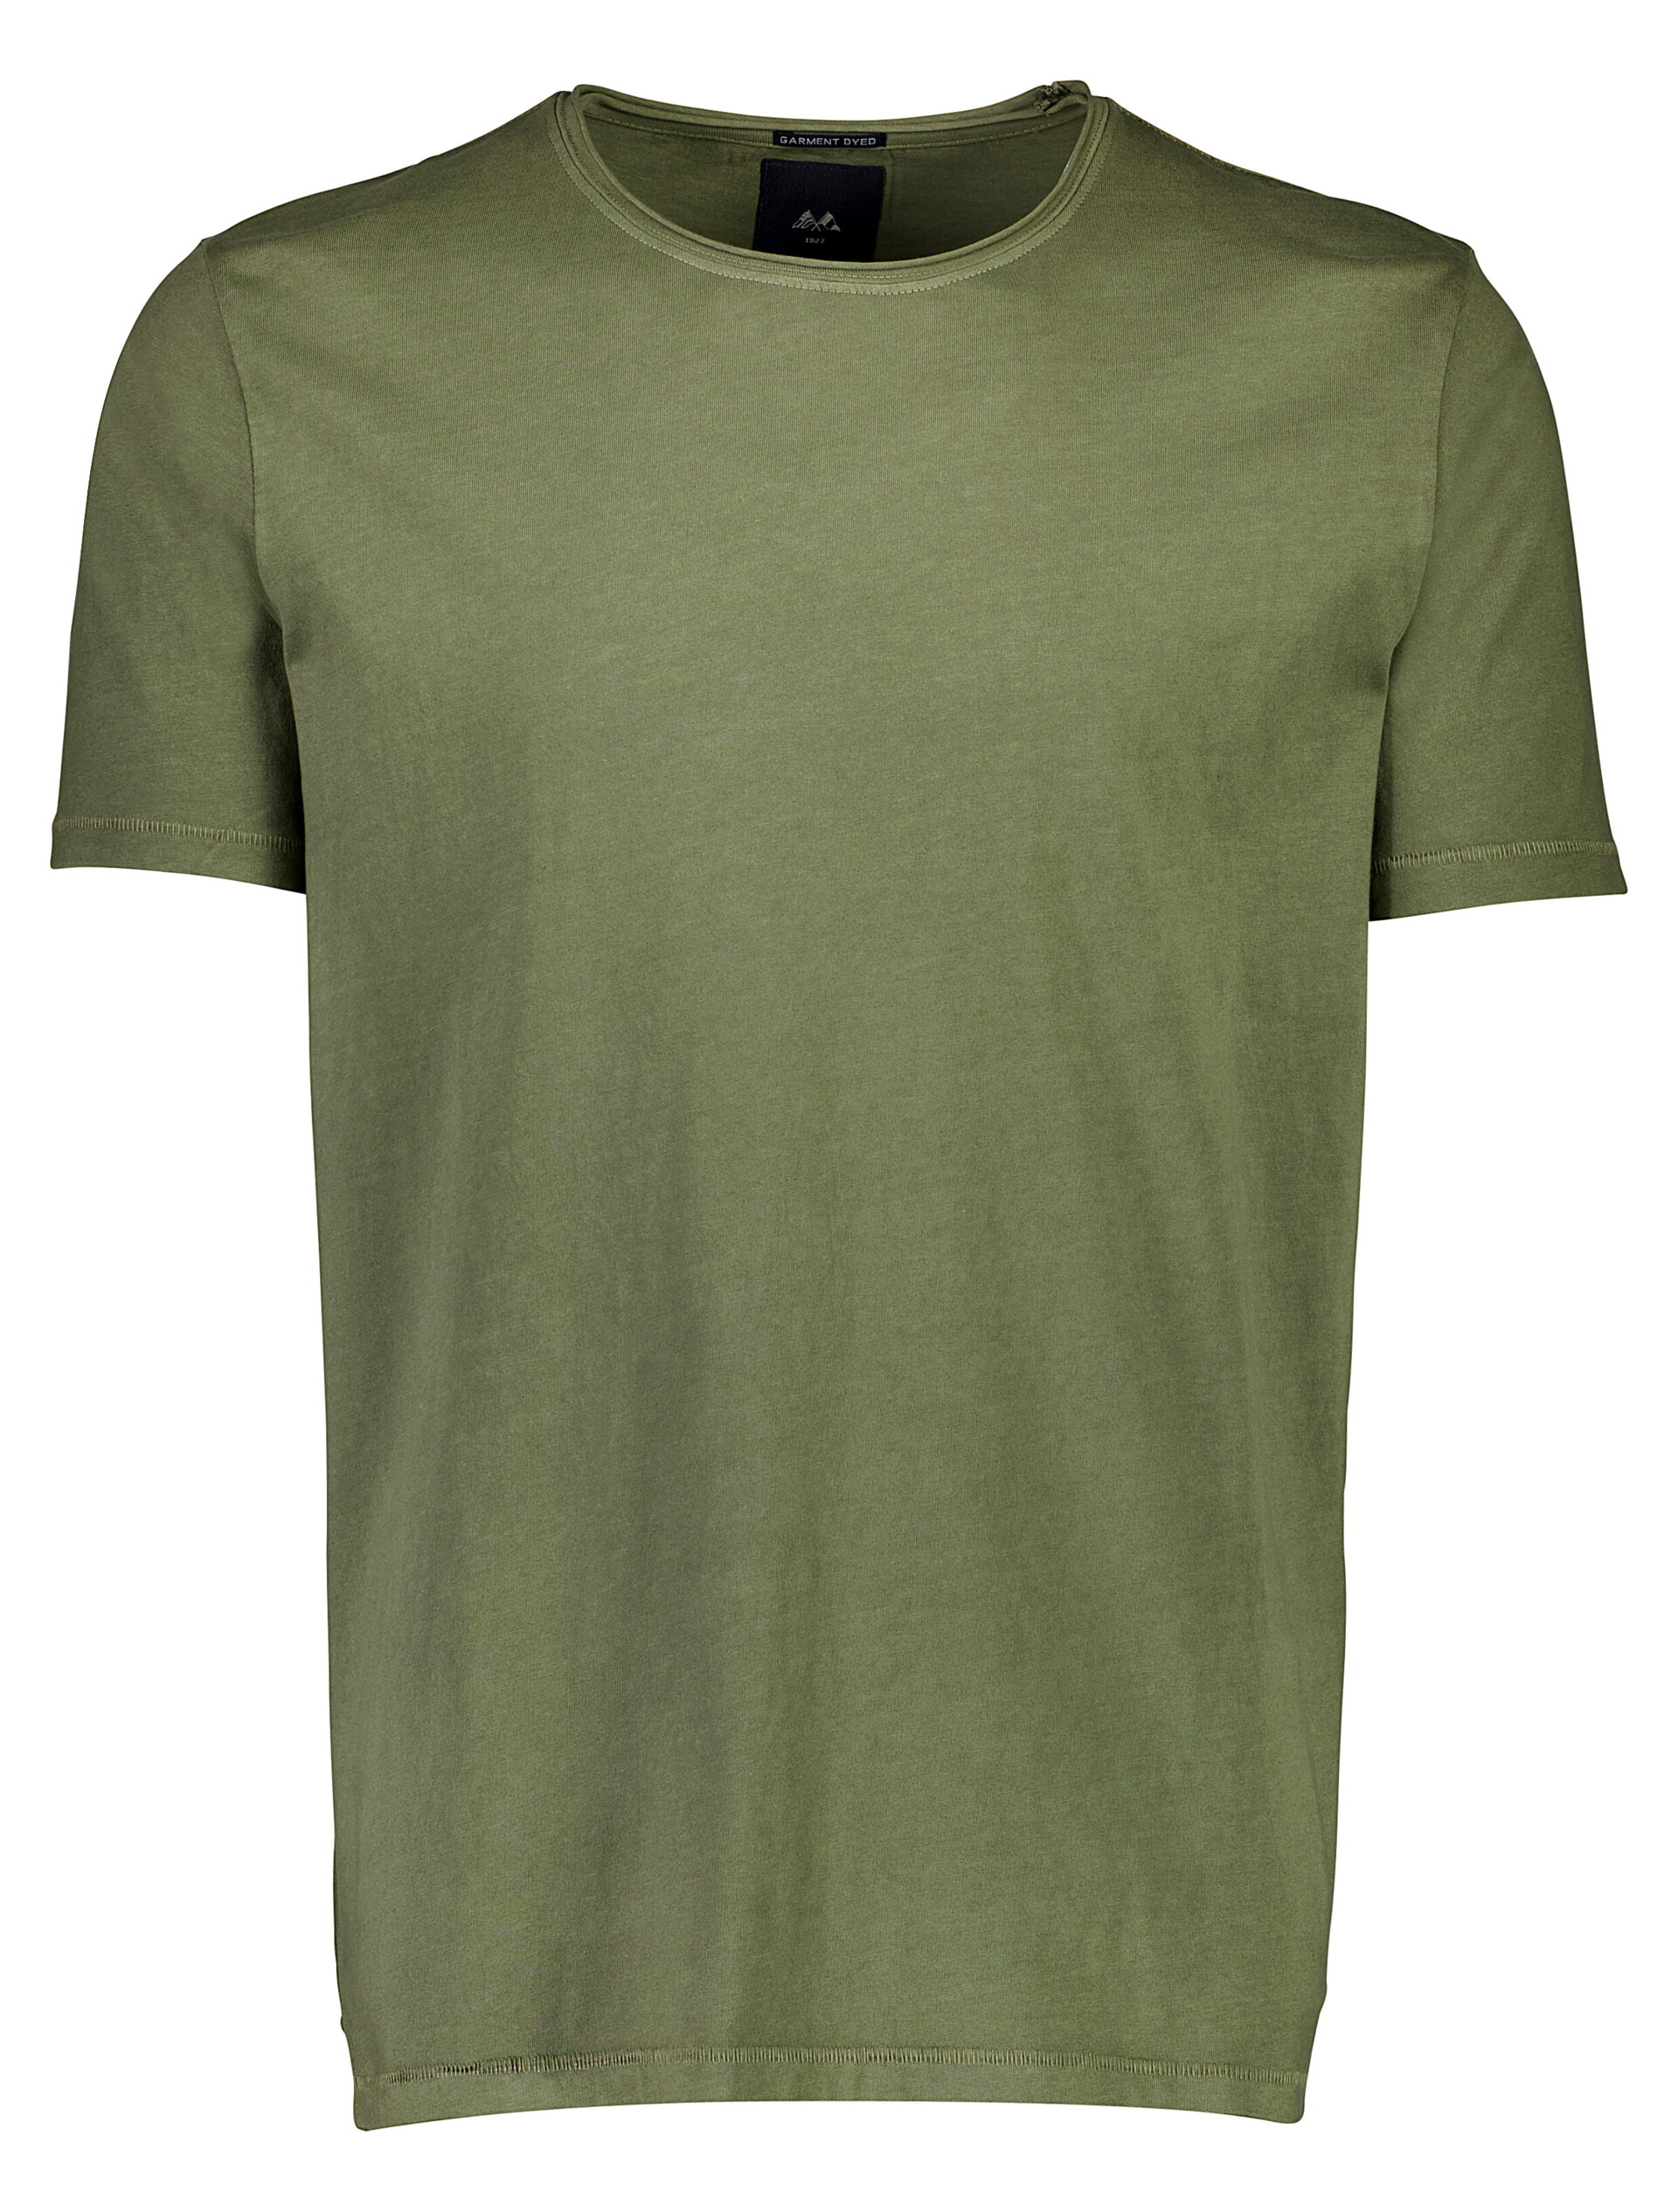 Lindbergh T-shirt grün / dusty army